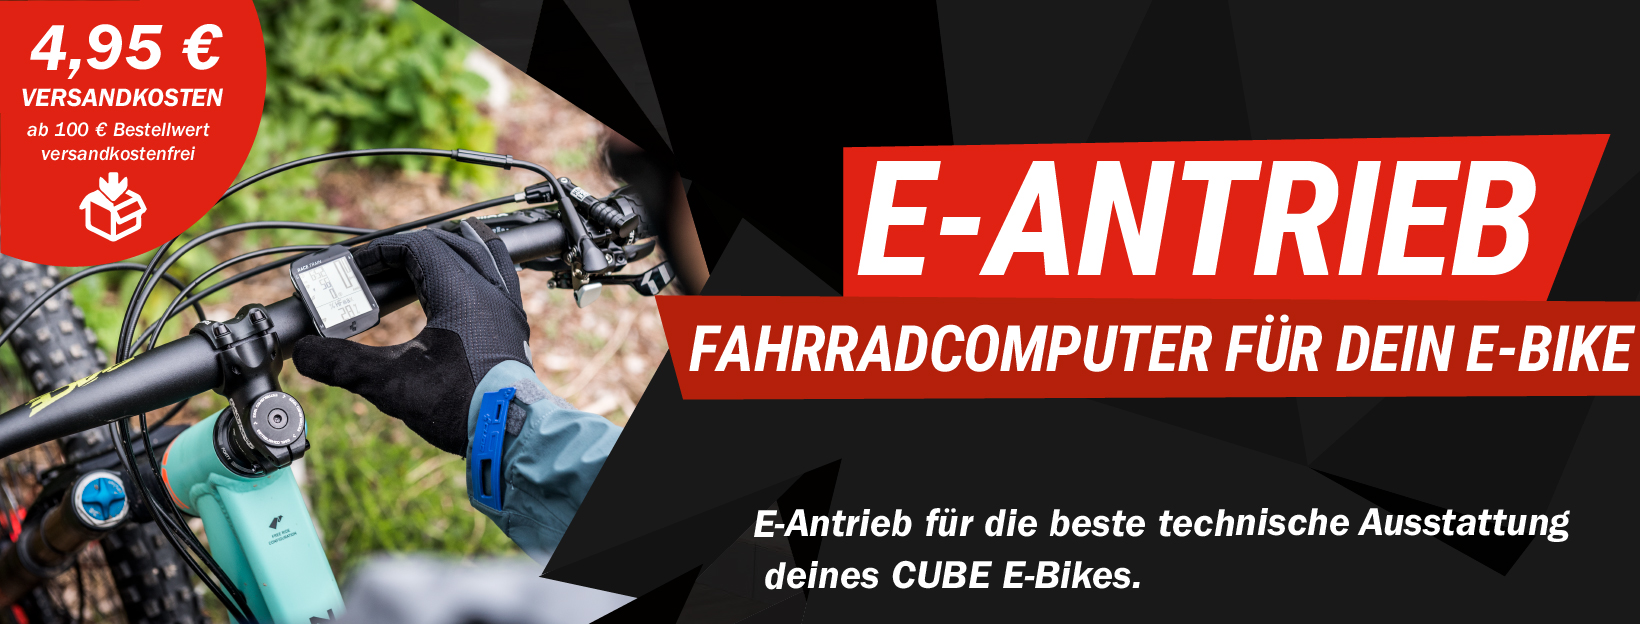 Fahrrad E-Antrieb im CUBE Store Rostock kaufen